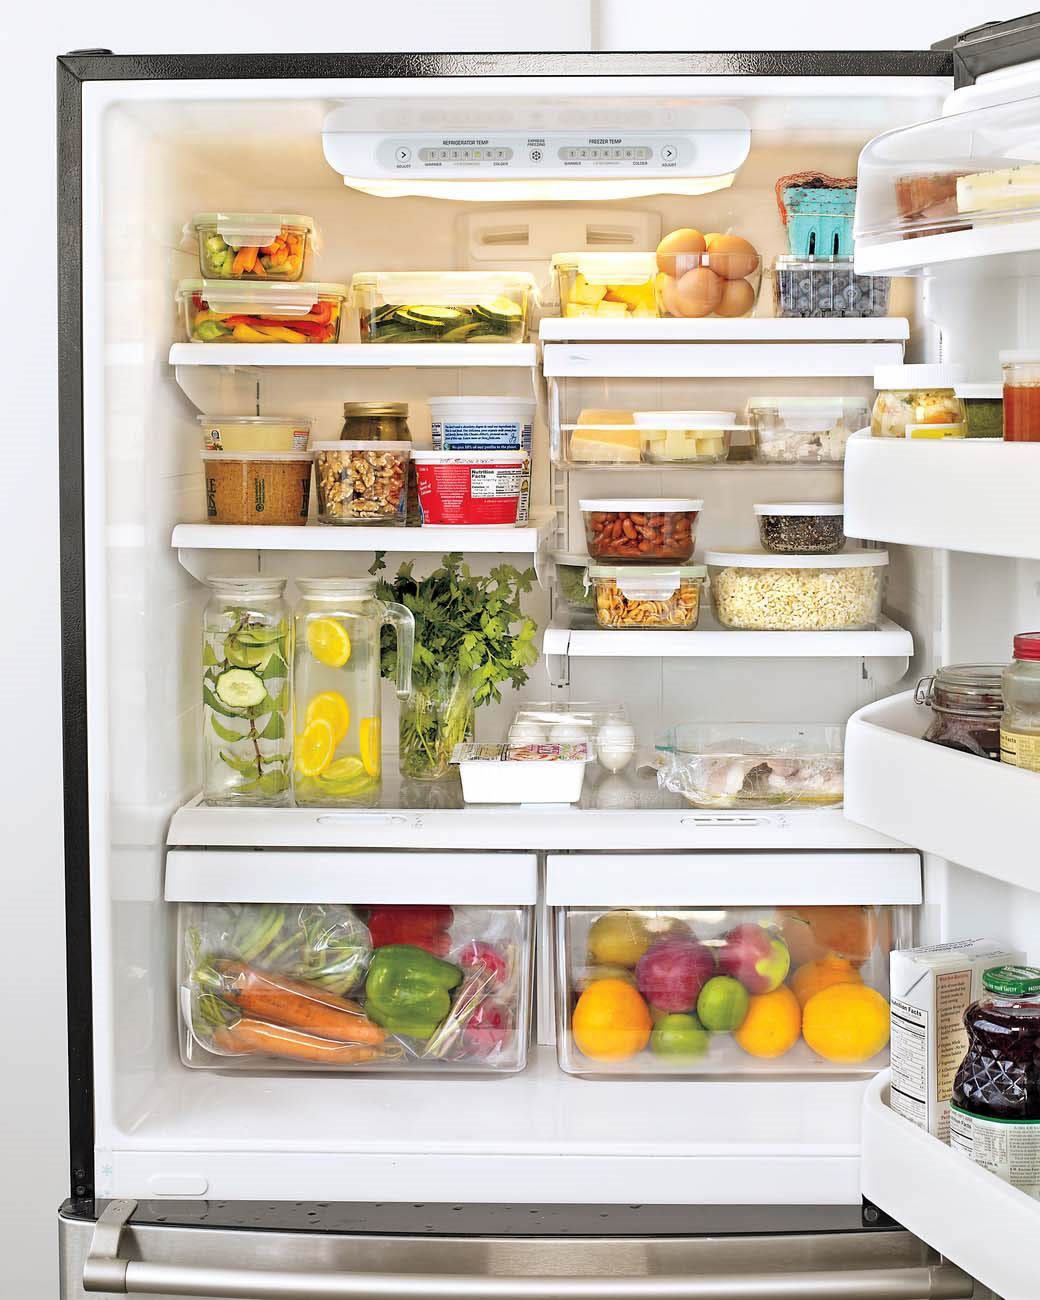 5 cách vệ sinh tủ lạnh đơn giản tại nhà